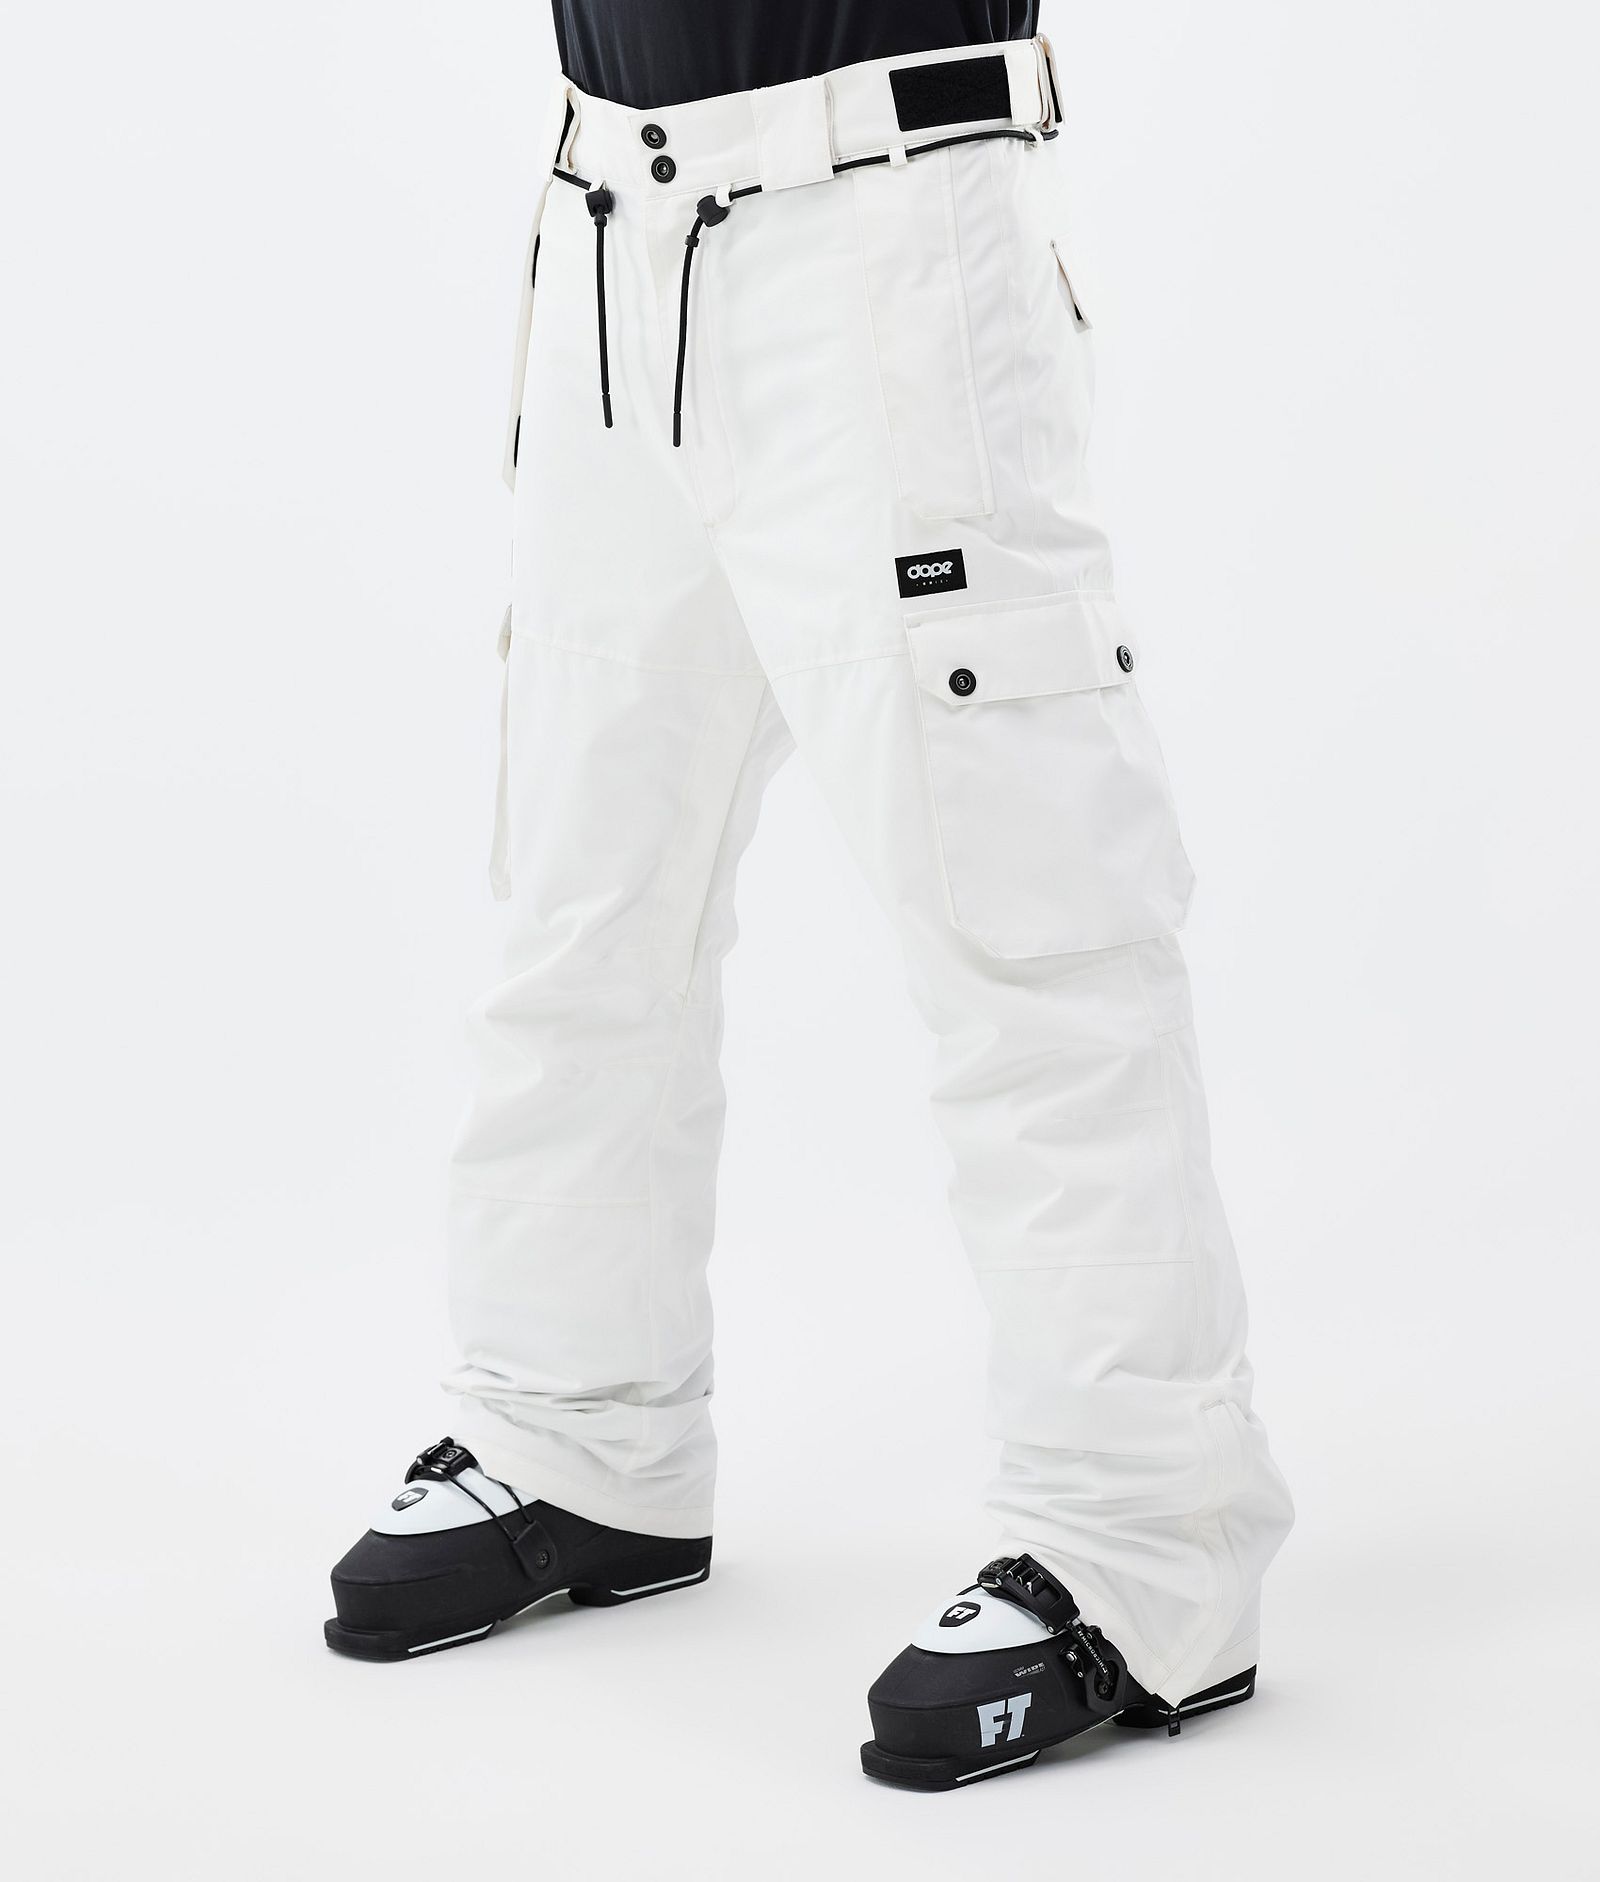 Iconic Pantalon de Ski Homme Old White